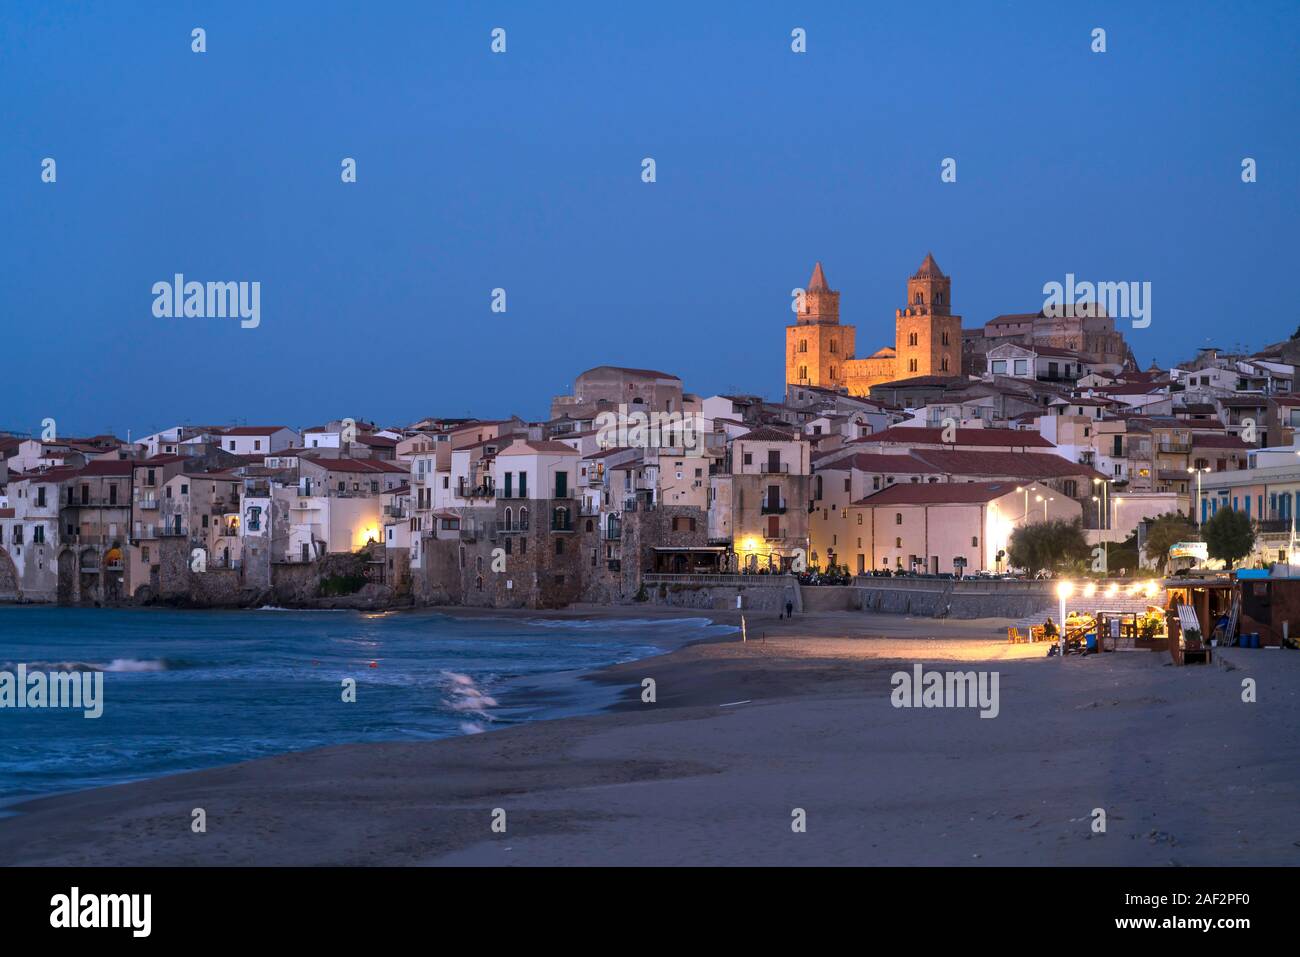 Strand Spiaggia Lungomare und die Altstadt mit der Kathedrale von Cefalù in der Abenddämmerrung, Sizilien, Italien, Europa | Spiaggia Lungomare beac Stockfoto